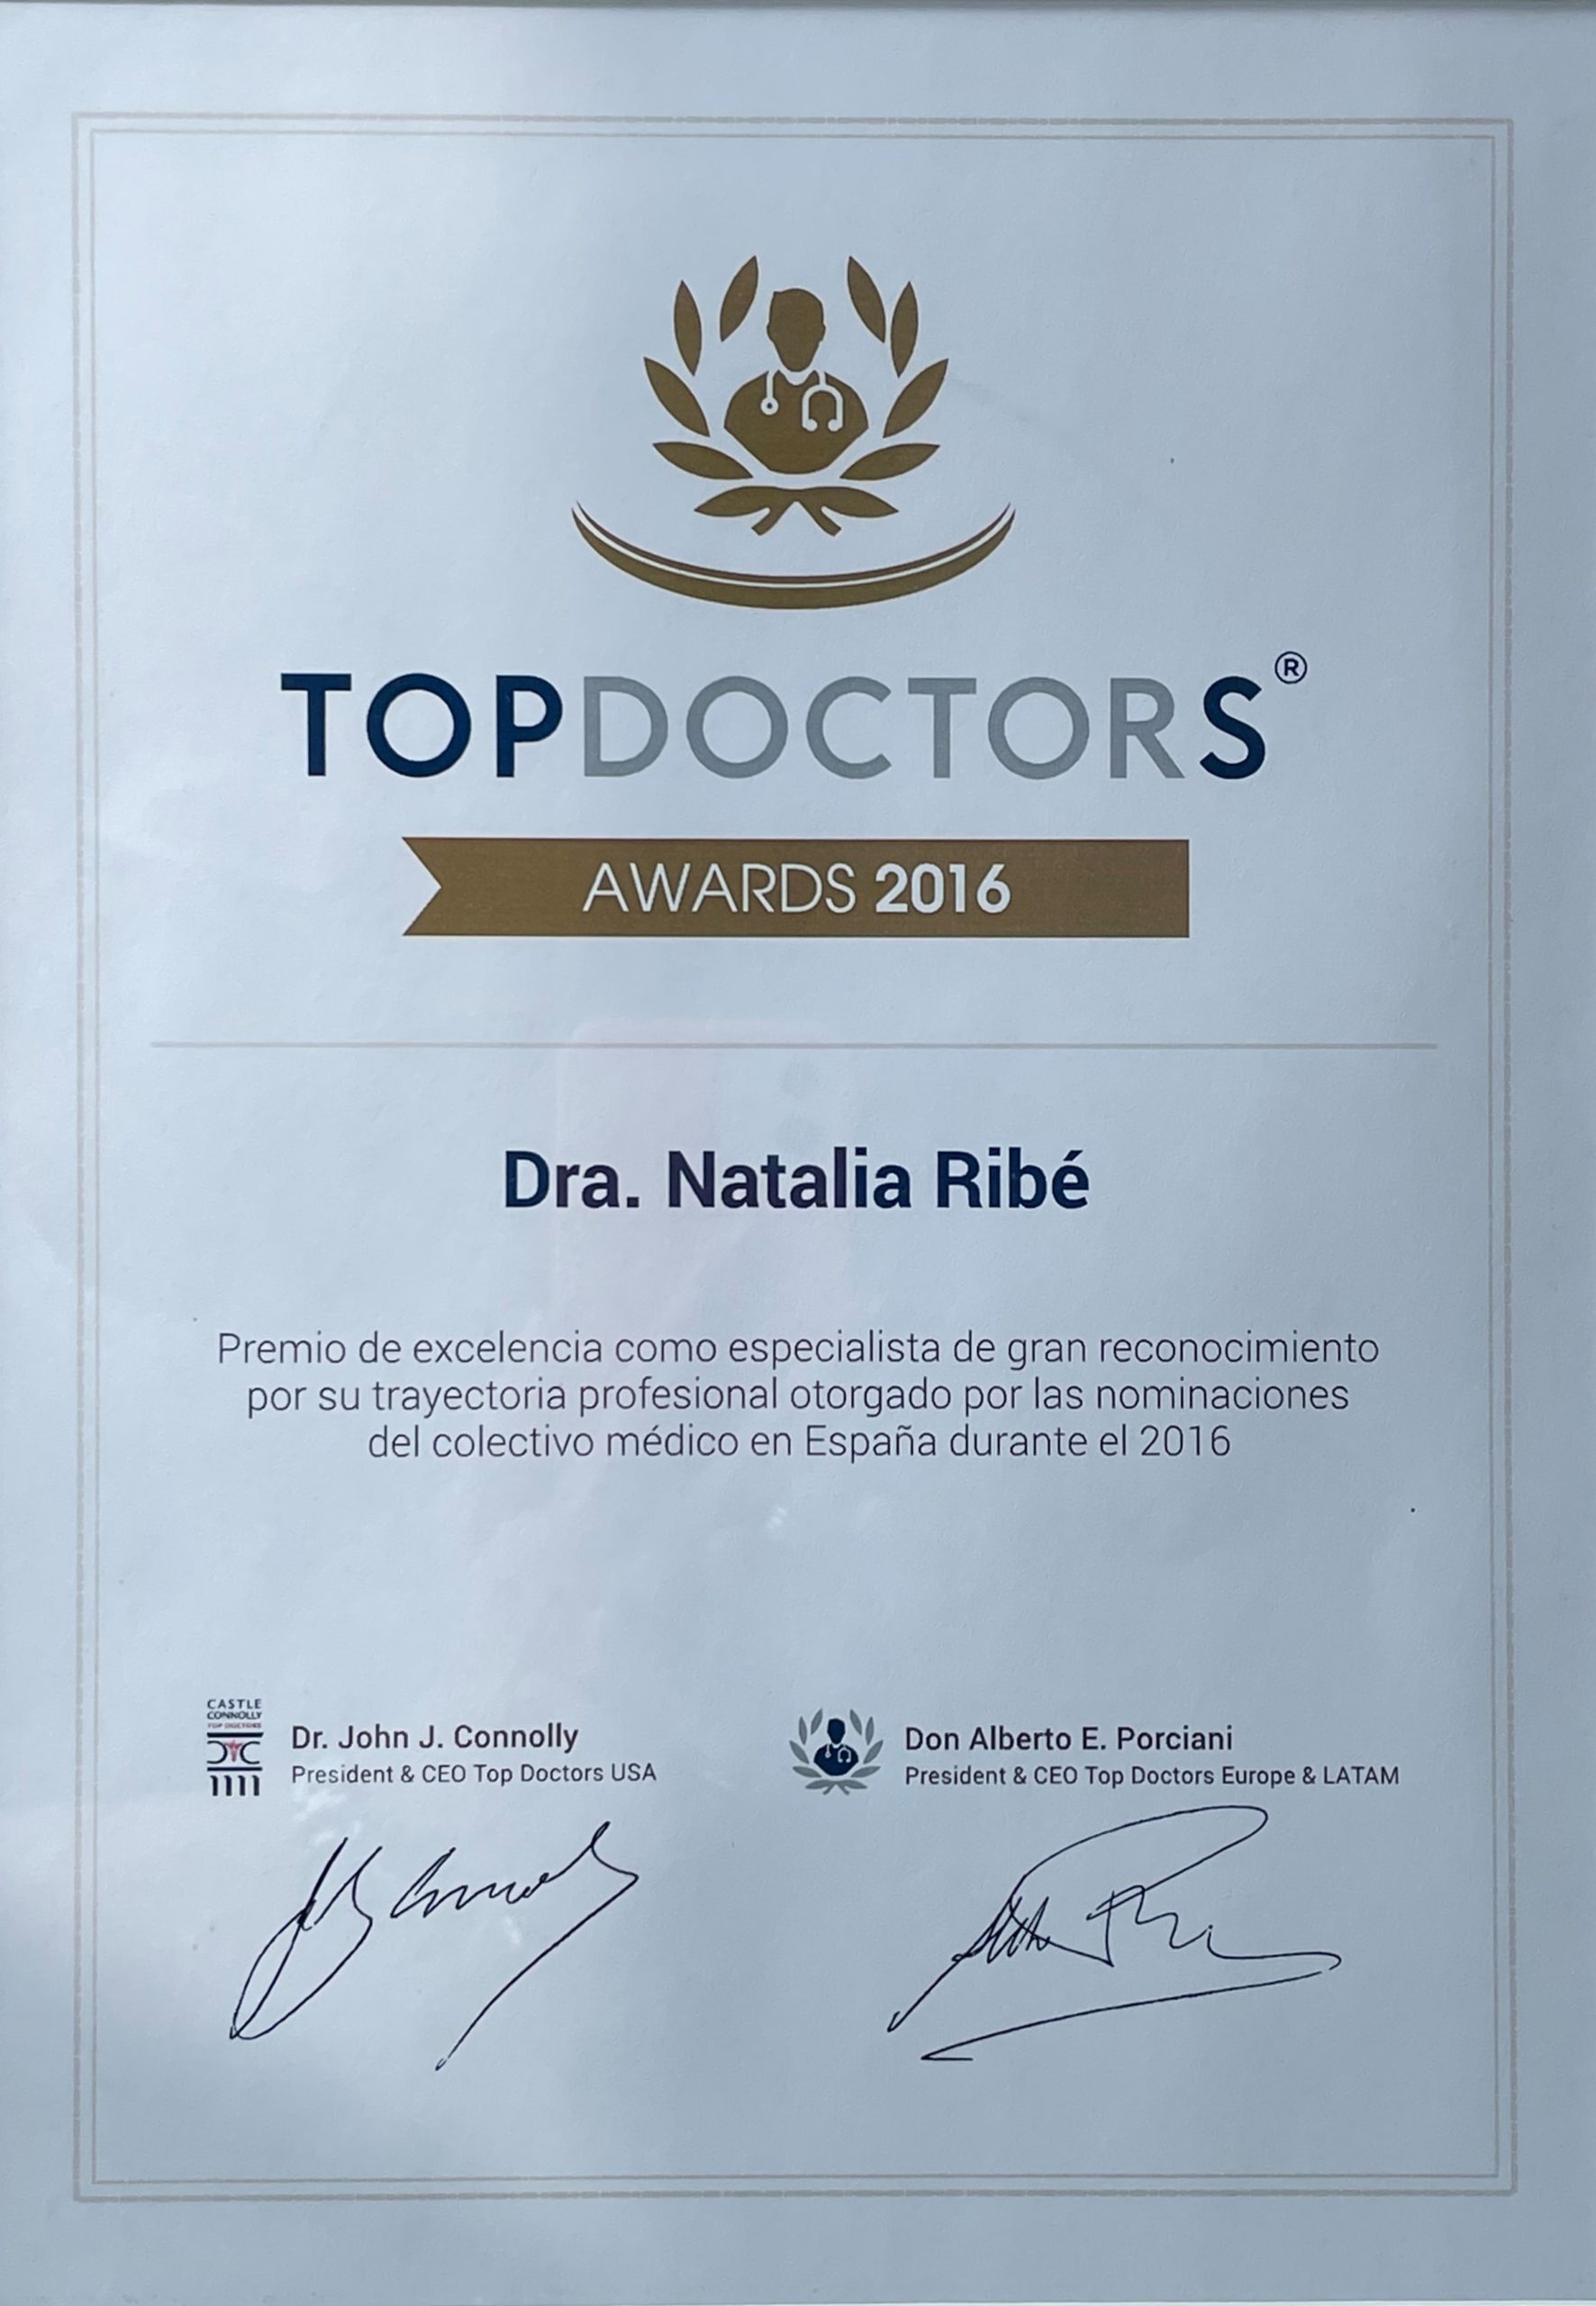 Top Doctors Awards